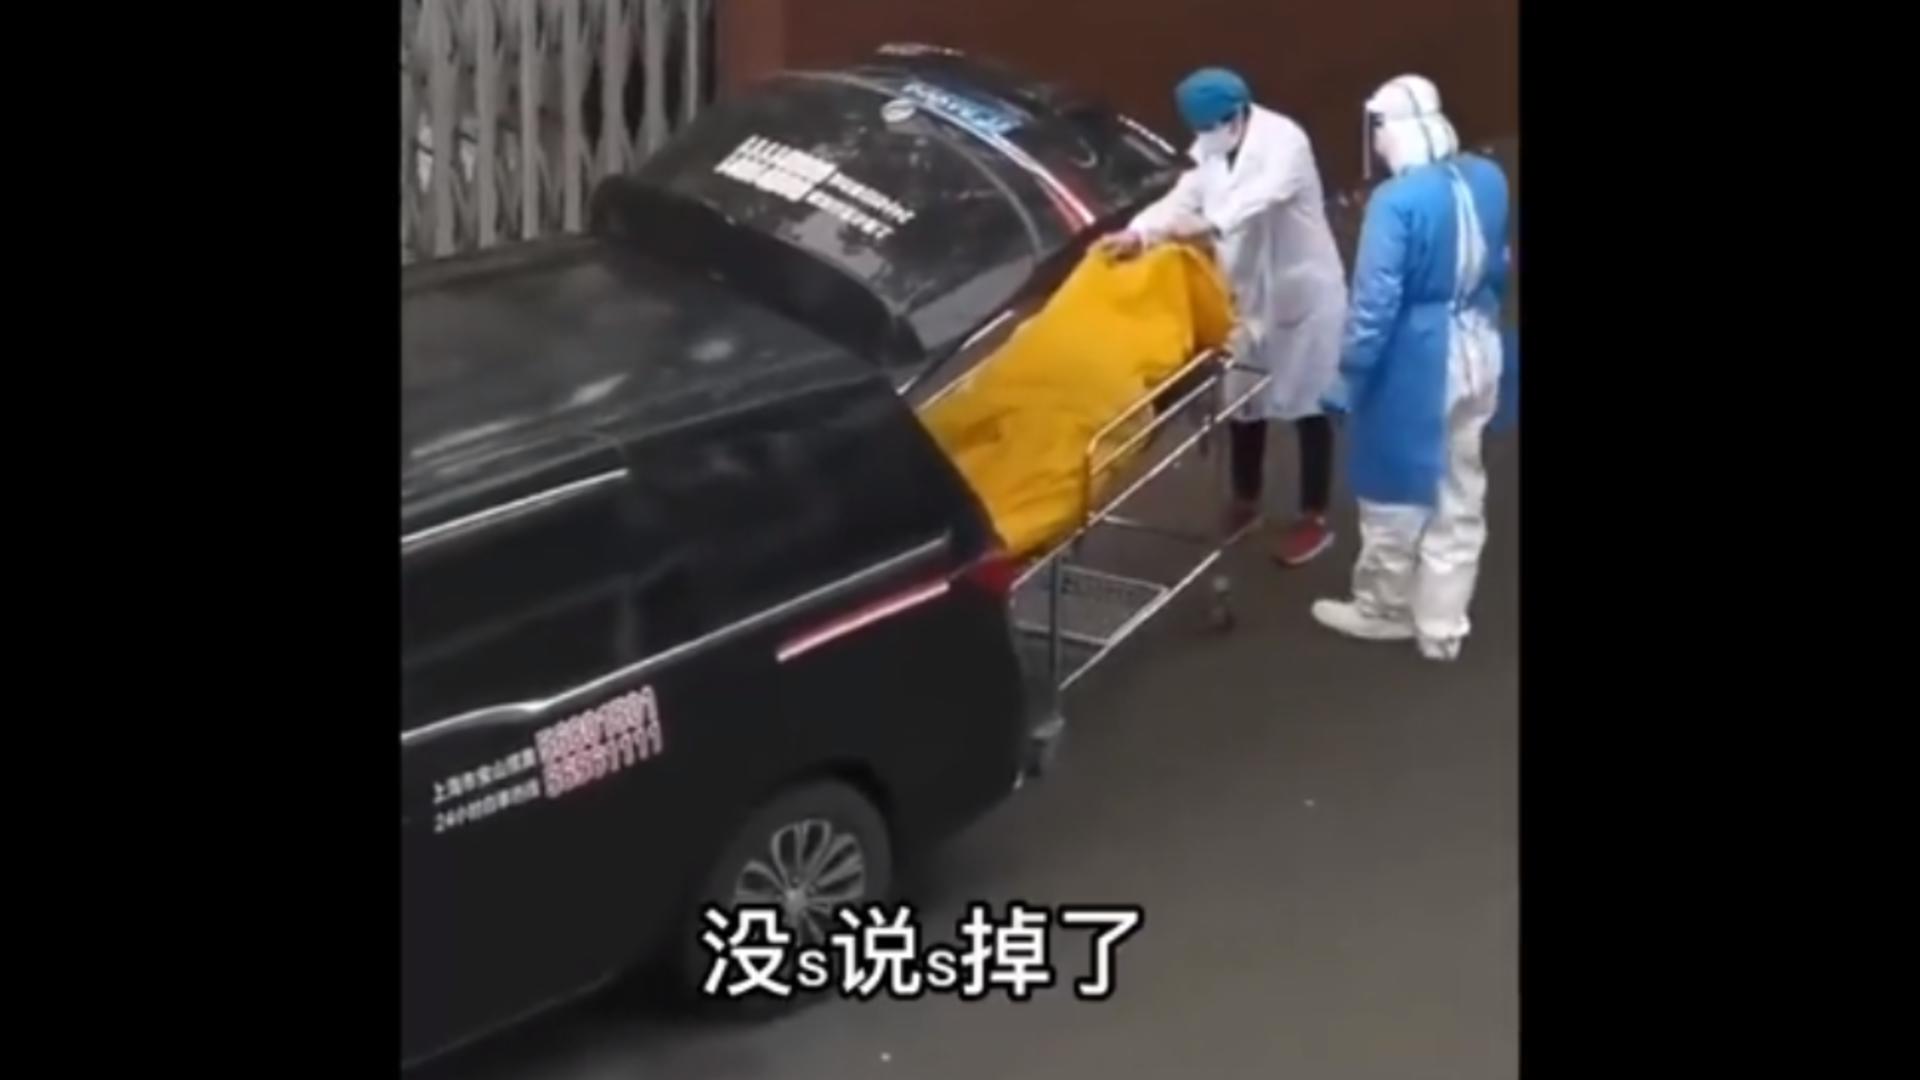 CARANTINA din Shanghai a ajuns la APOGEU: un om a fost declarat mort, deși era viu – imaginile DISPERĂRII